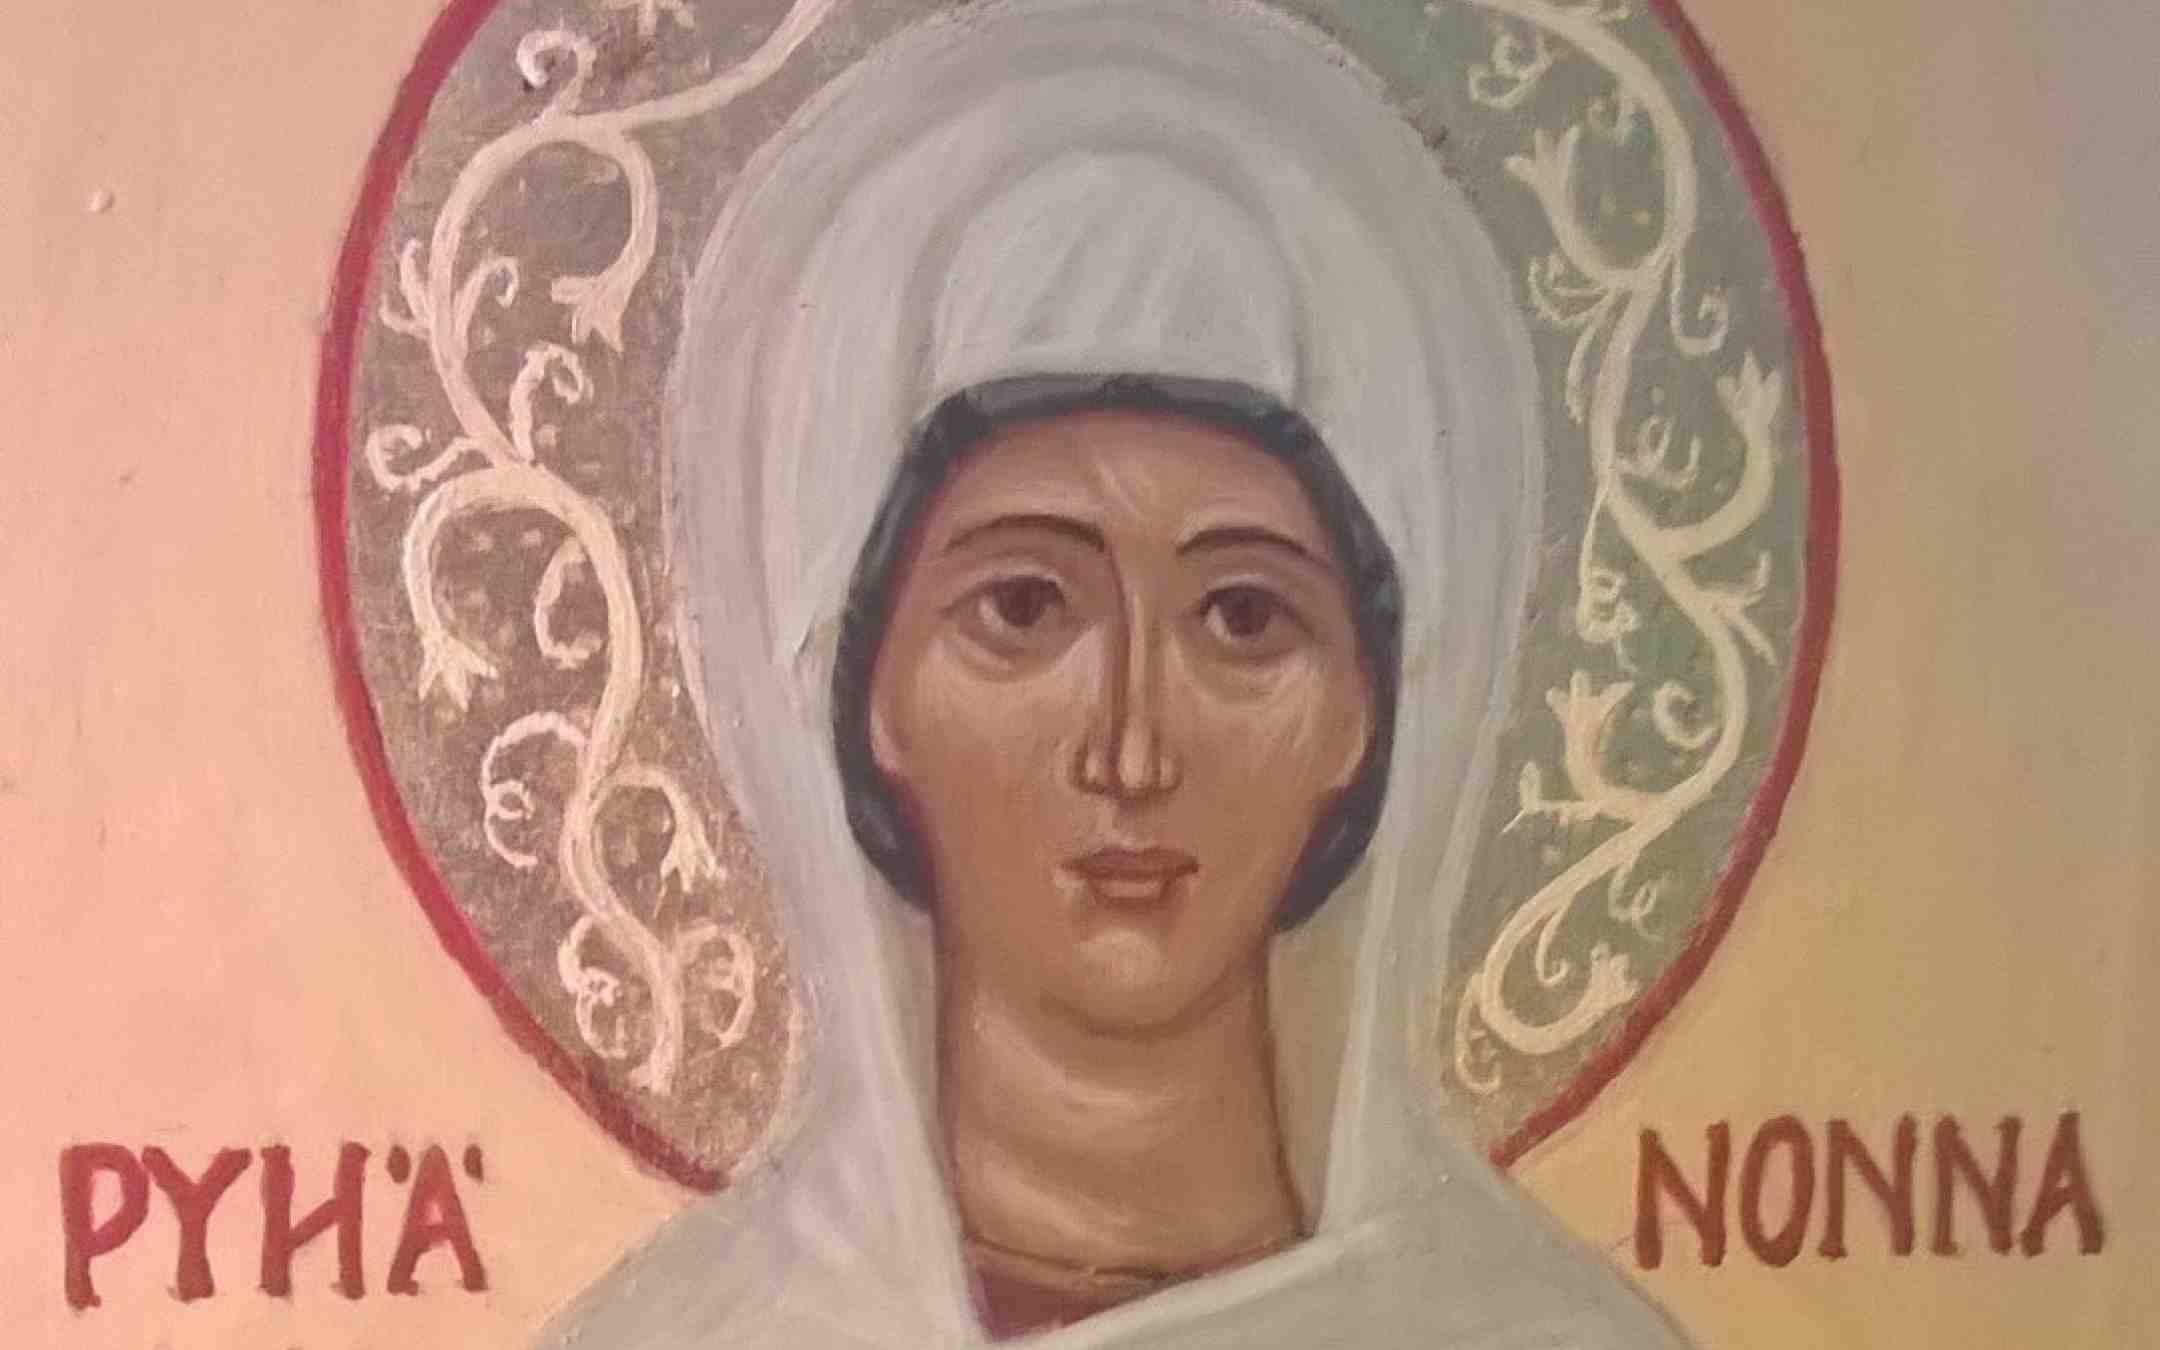 Pyhän Nonnan ikonikuva